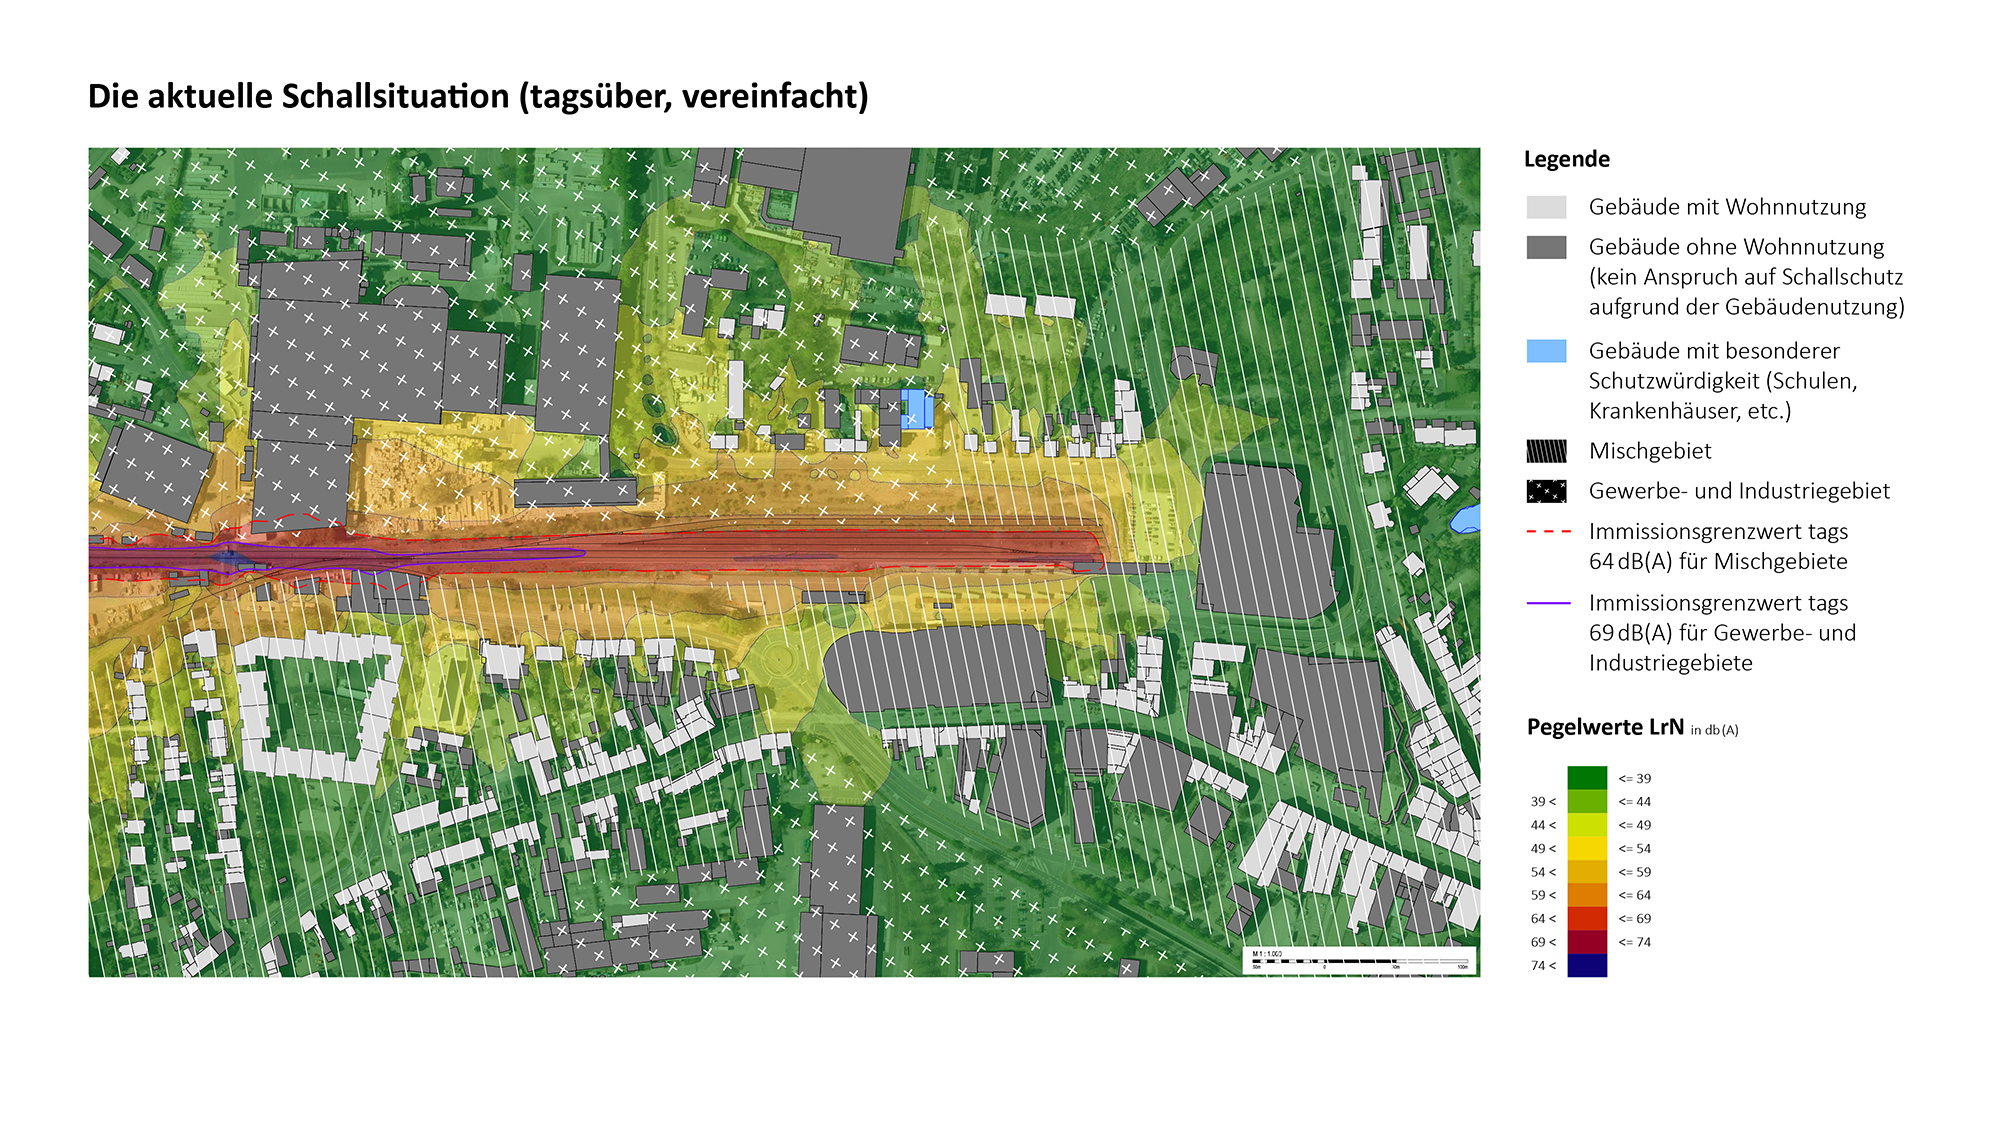 Eine Karte, die die Schallsituation tagsüber vor dem Ausbau der S-Bahn für den Bereich Bergisch Gladbach - Tannenbergstraße darstellt.